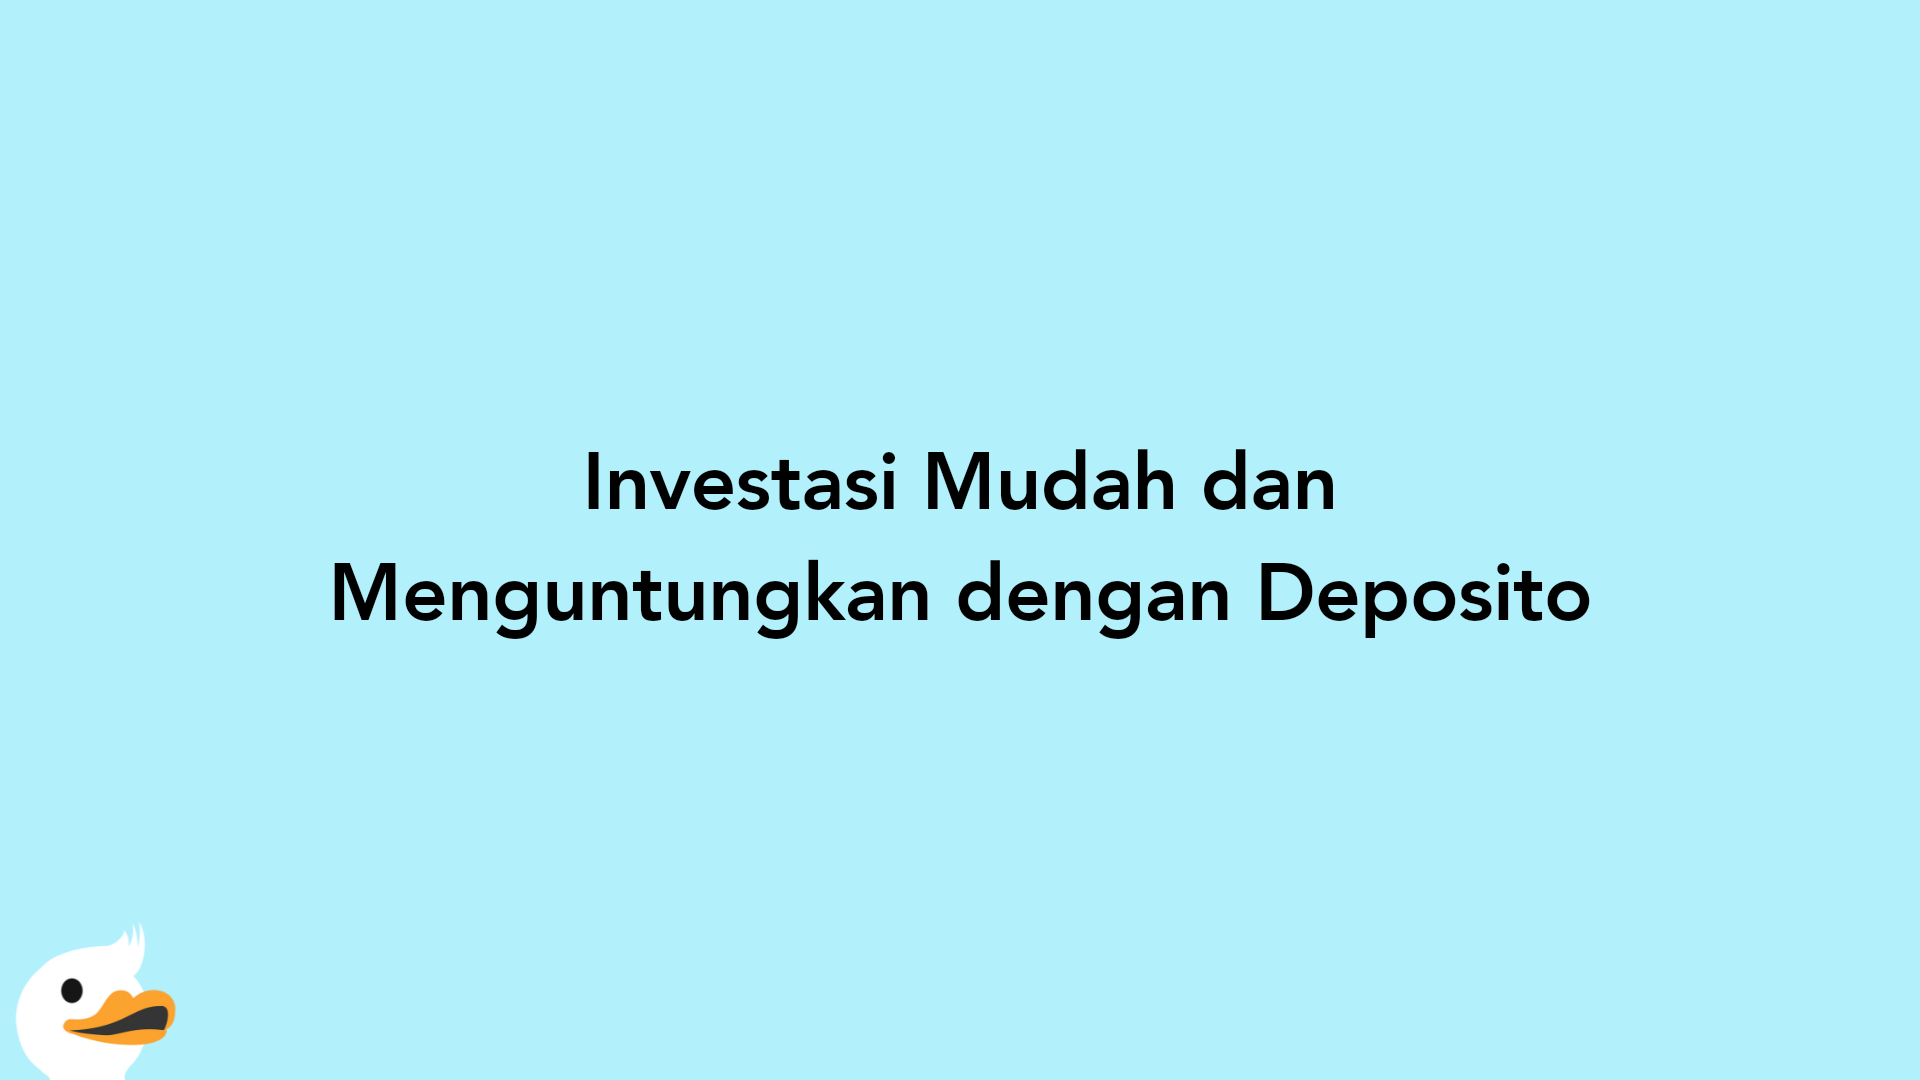 Investasi Mudah dan Menguntungkan dengan Deposito